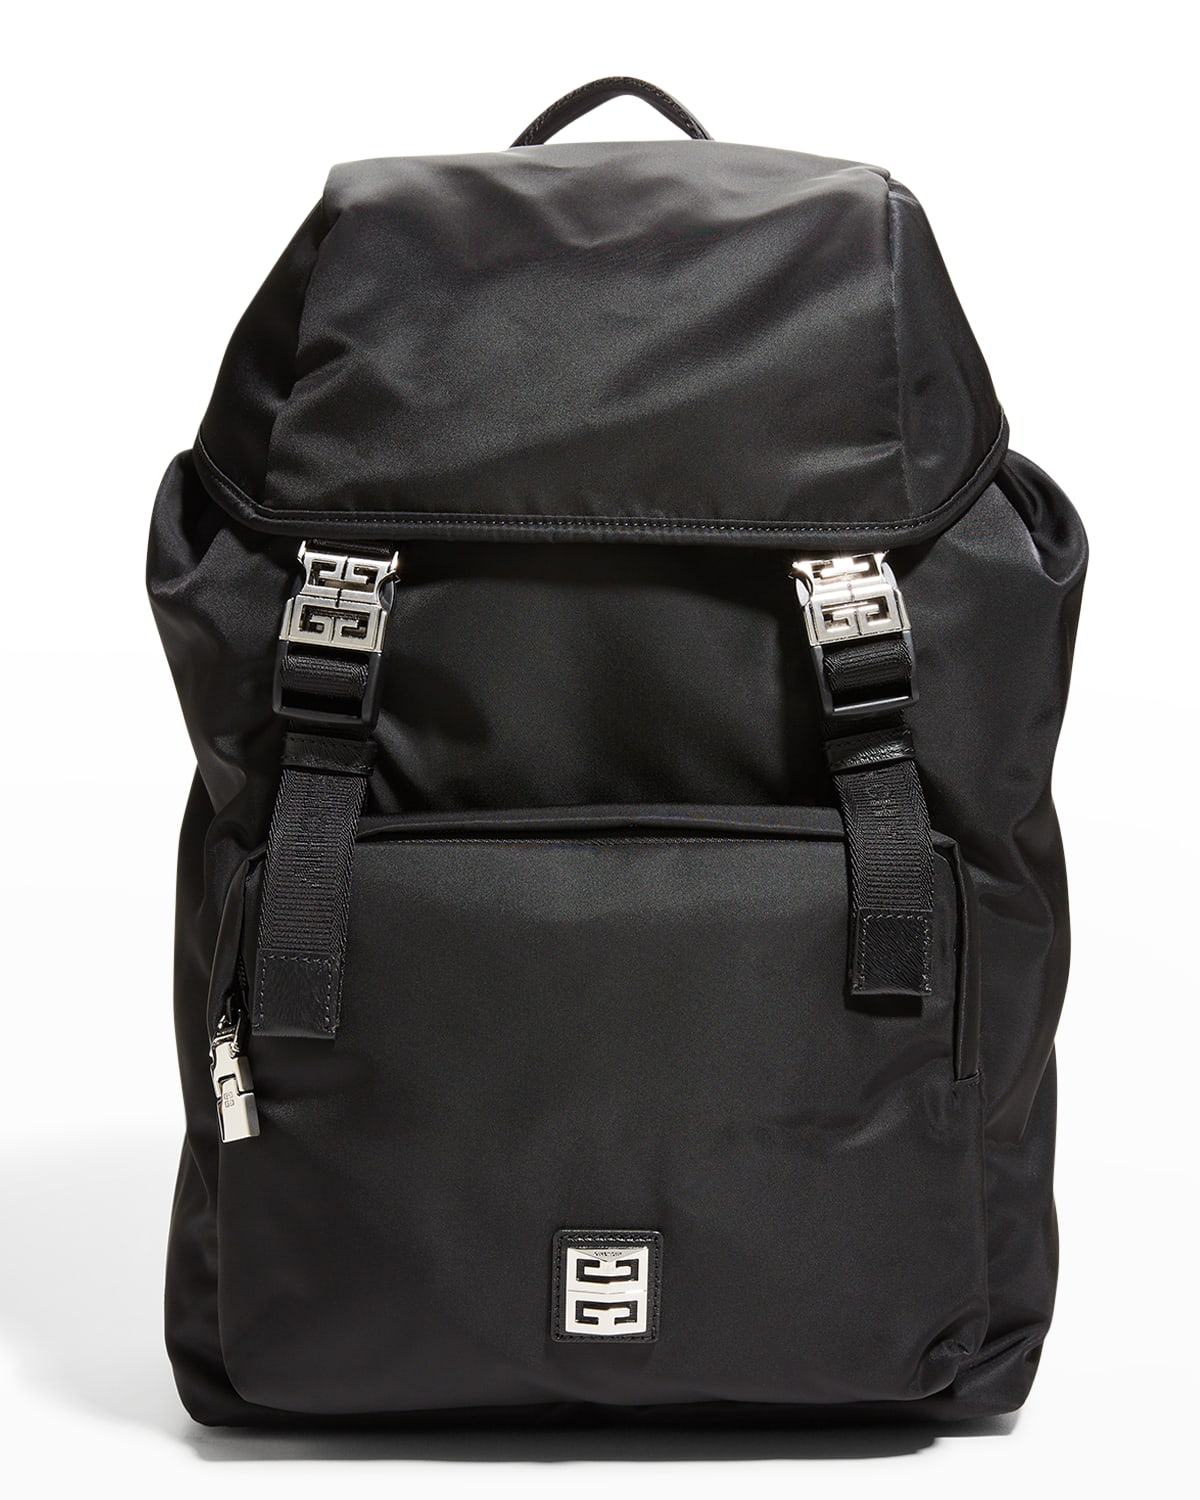 Givenchy Men's 4G Light Nylon Backpack